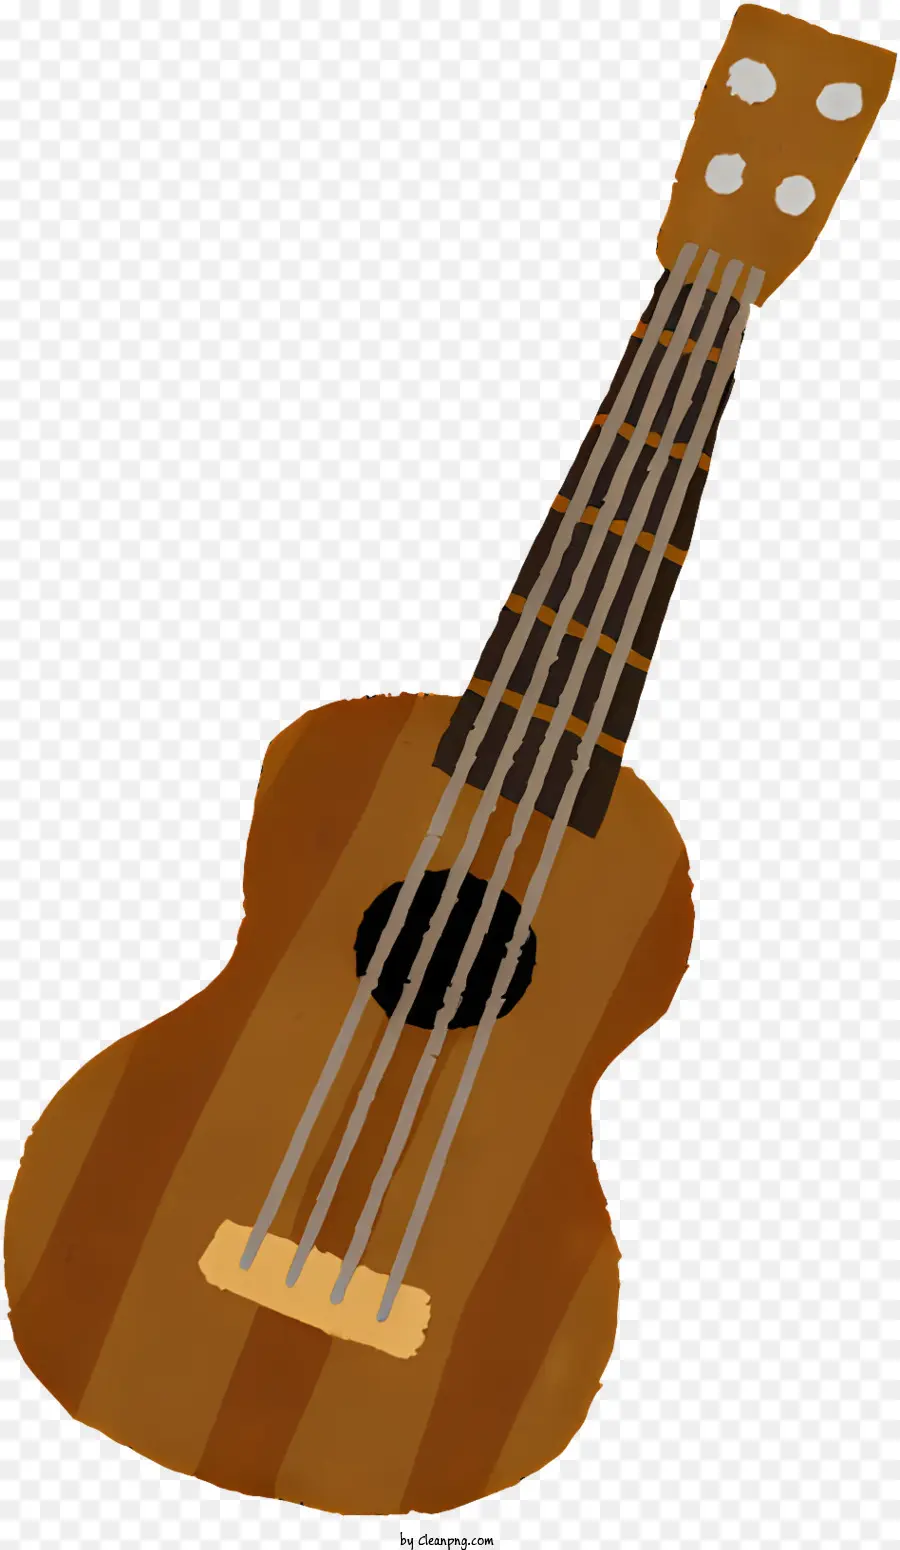 âm nhạc màu nâu guitar tròn cơ thể guitar guitar guitar guitar cổ guitar - Hình ảnh của cây đàn guitar màu nâu với thân tròn và dây